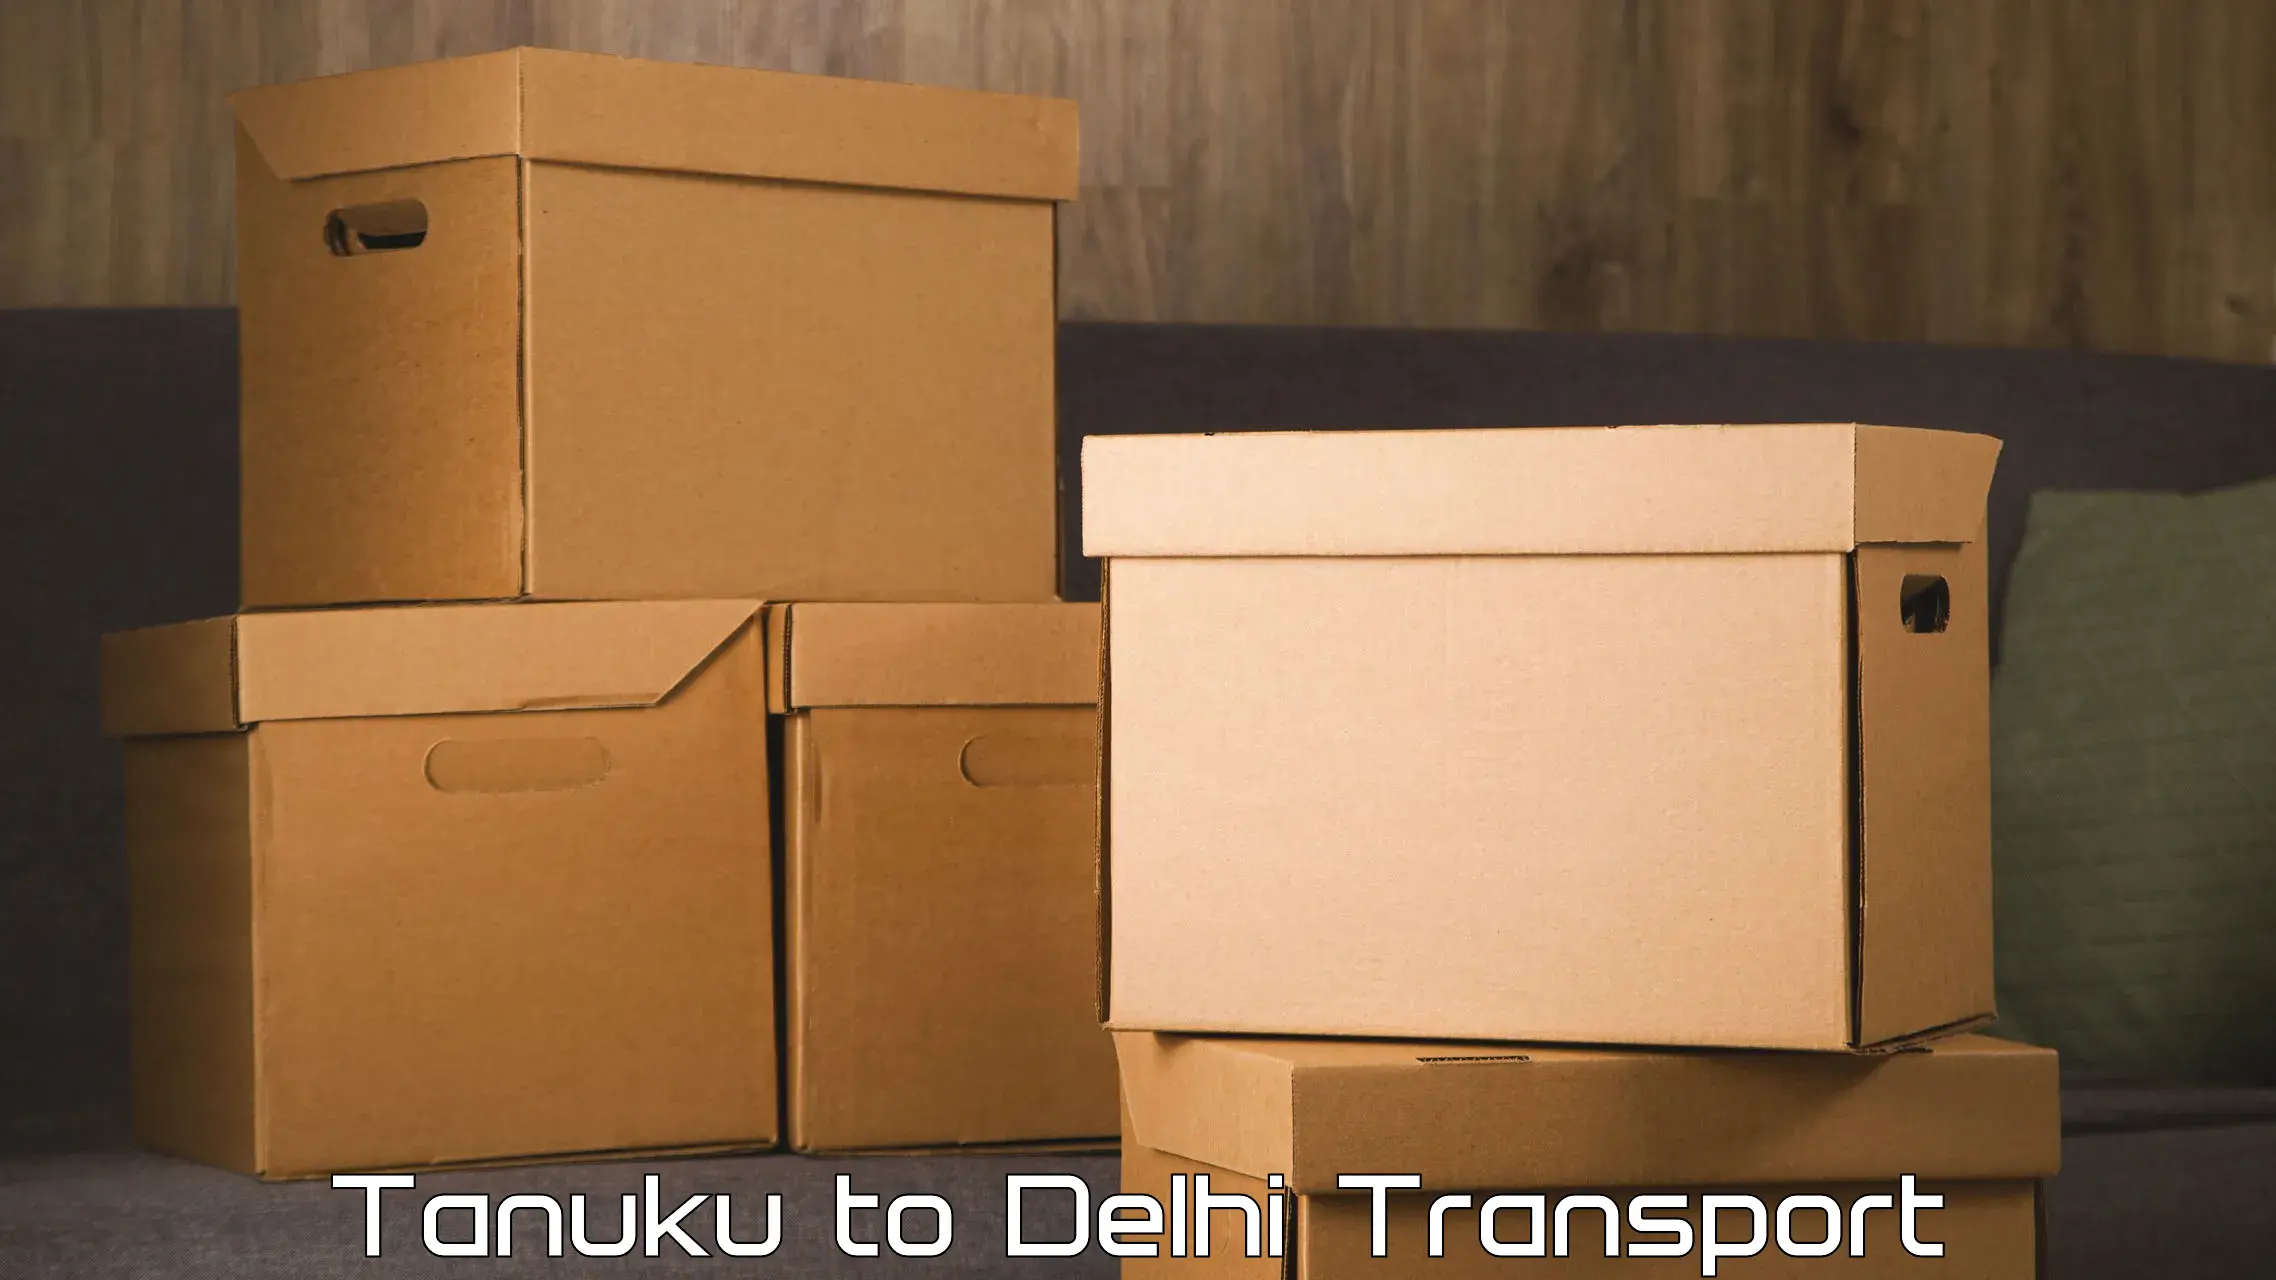 Furniture transport service Tanuku to Lodhi Road